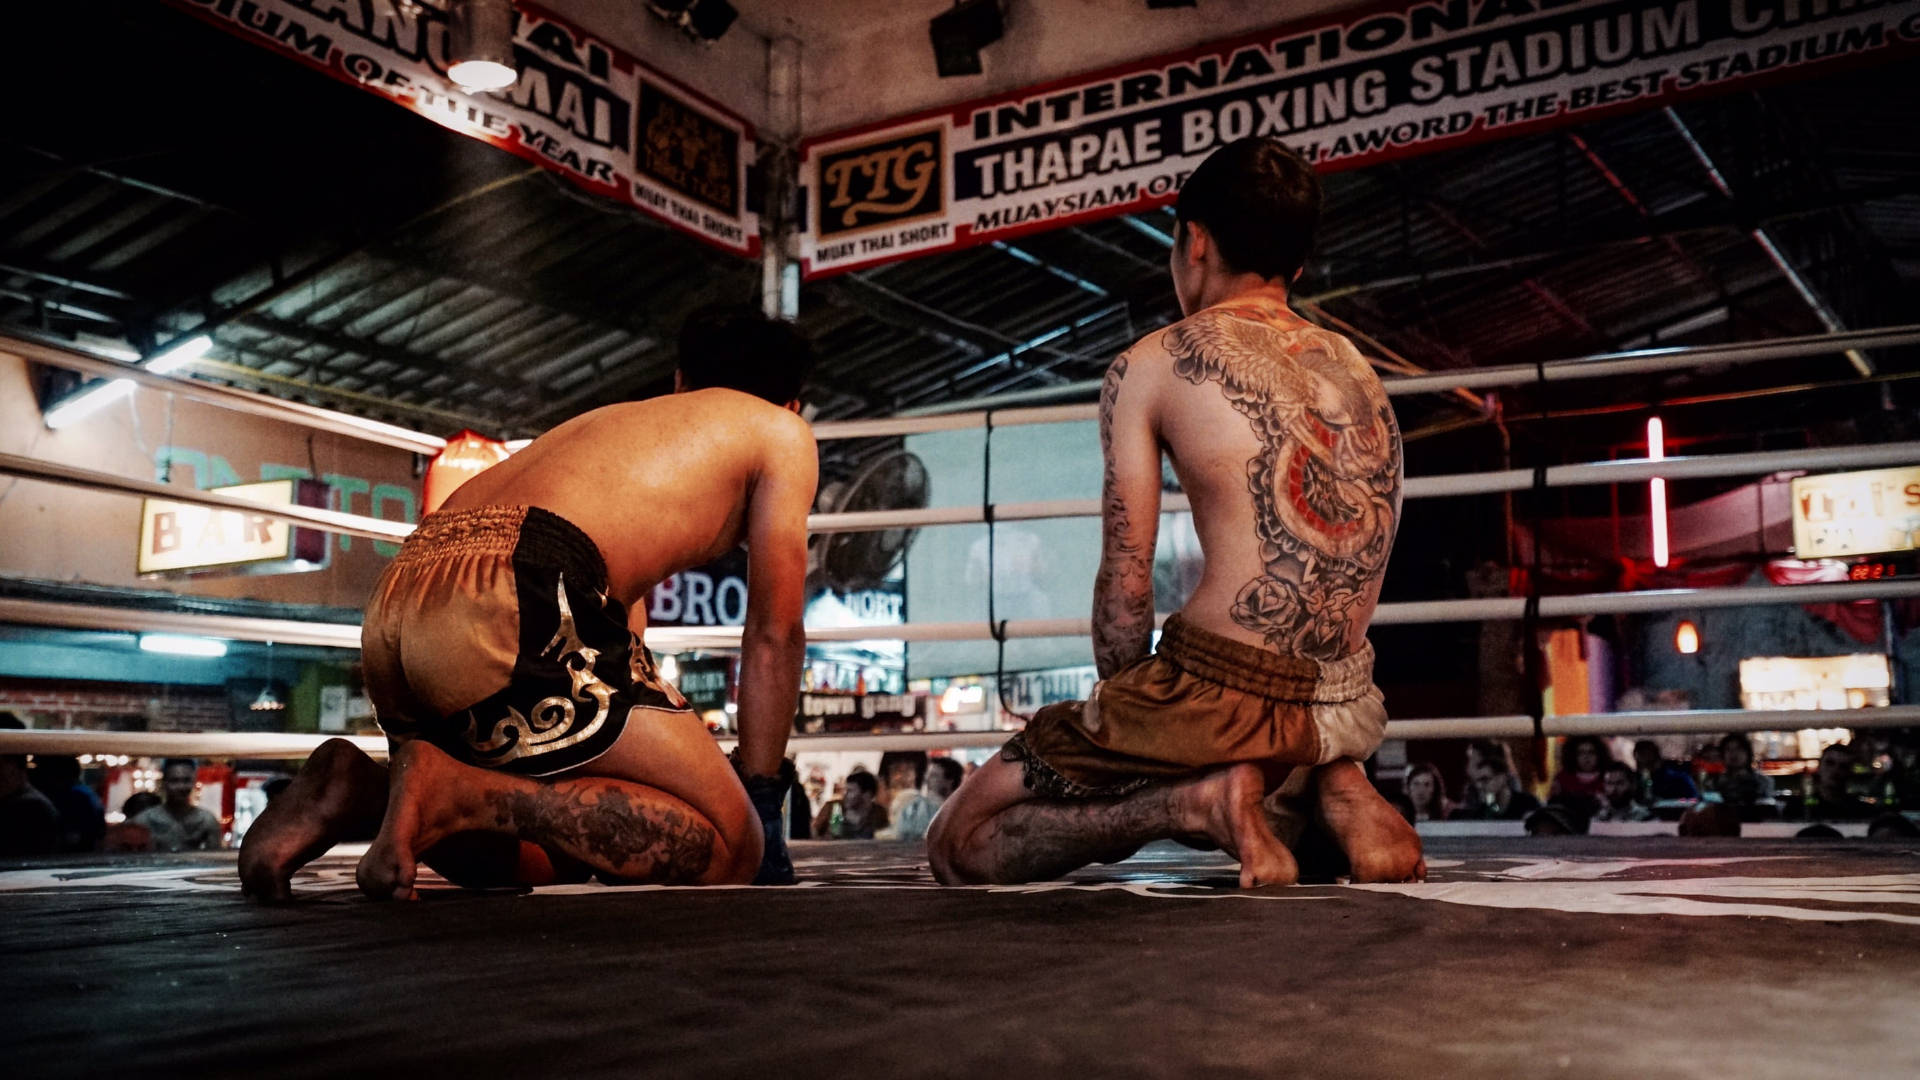 Duking It Out: To Muay Thai-kunstnere der kæmper mod hinanden. Wallpaper